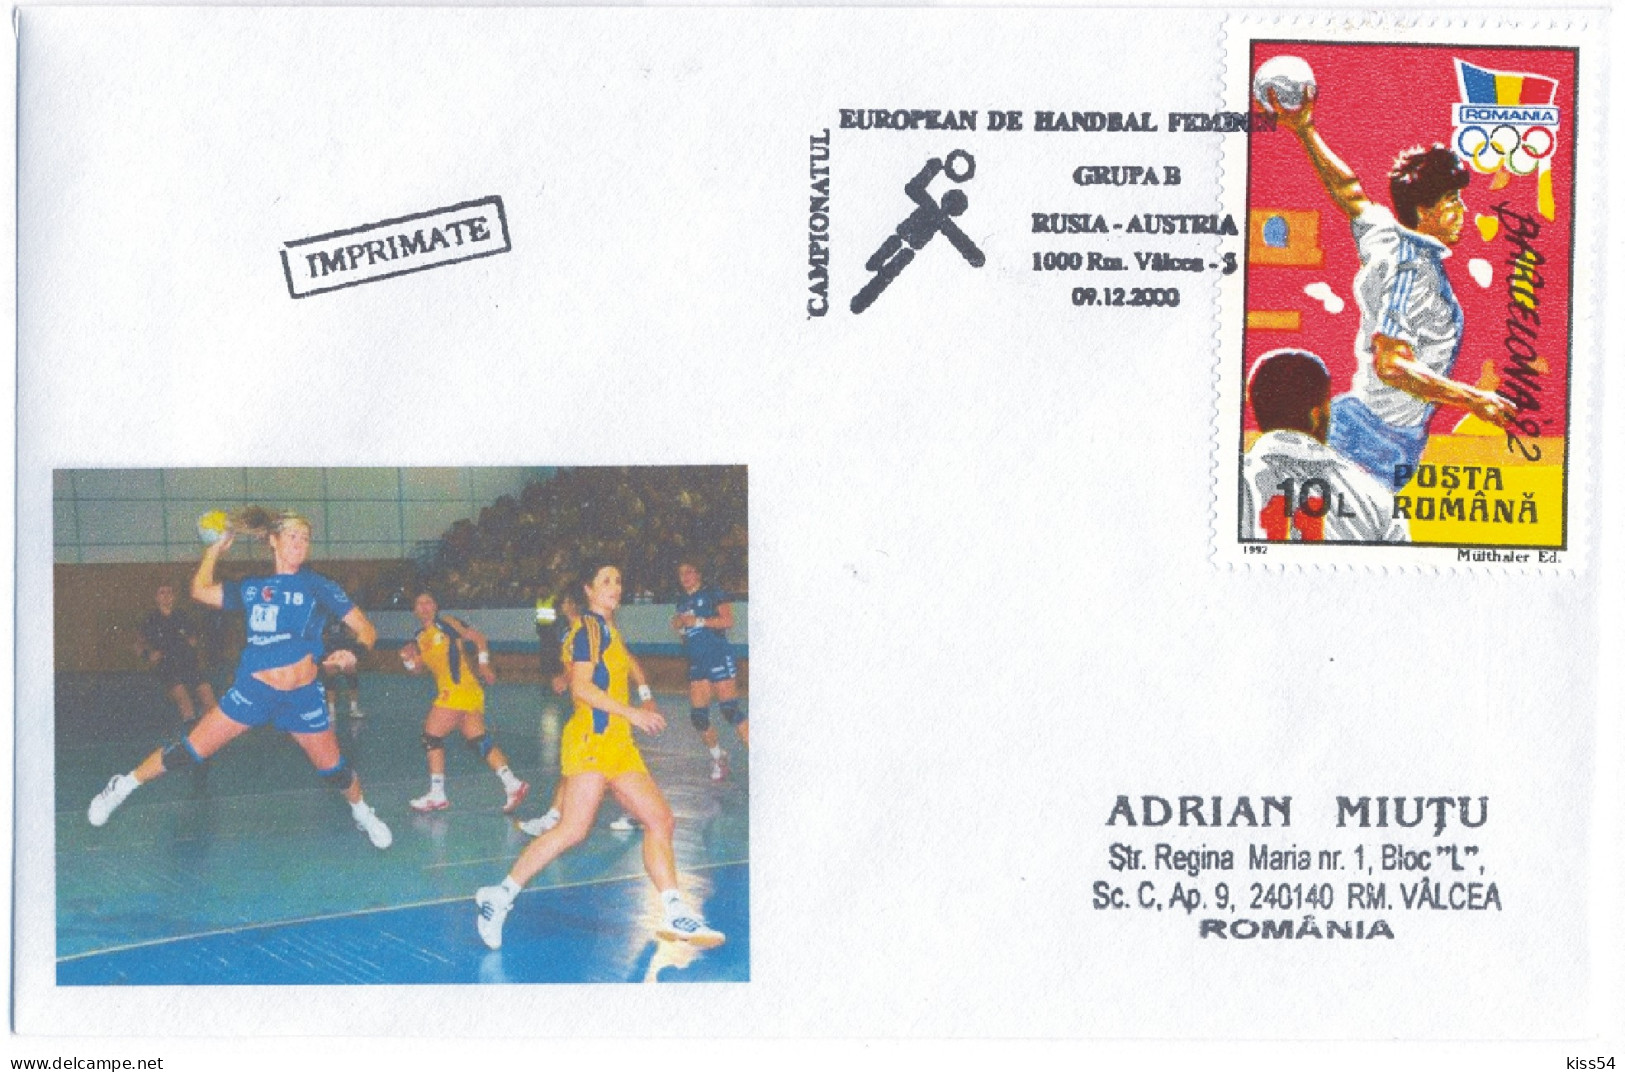 H 2 - 795 Russia - Austria, Handball - WORLD CHAMPIONSHIP 2004 - Cover - 2004 - Pallamano